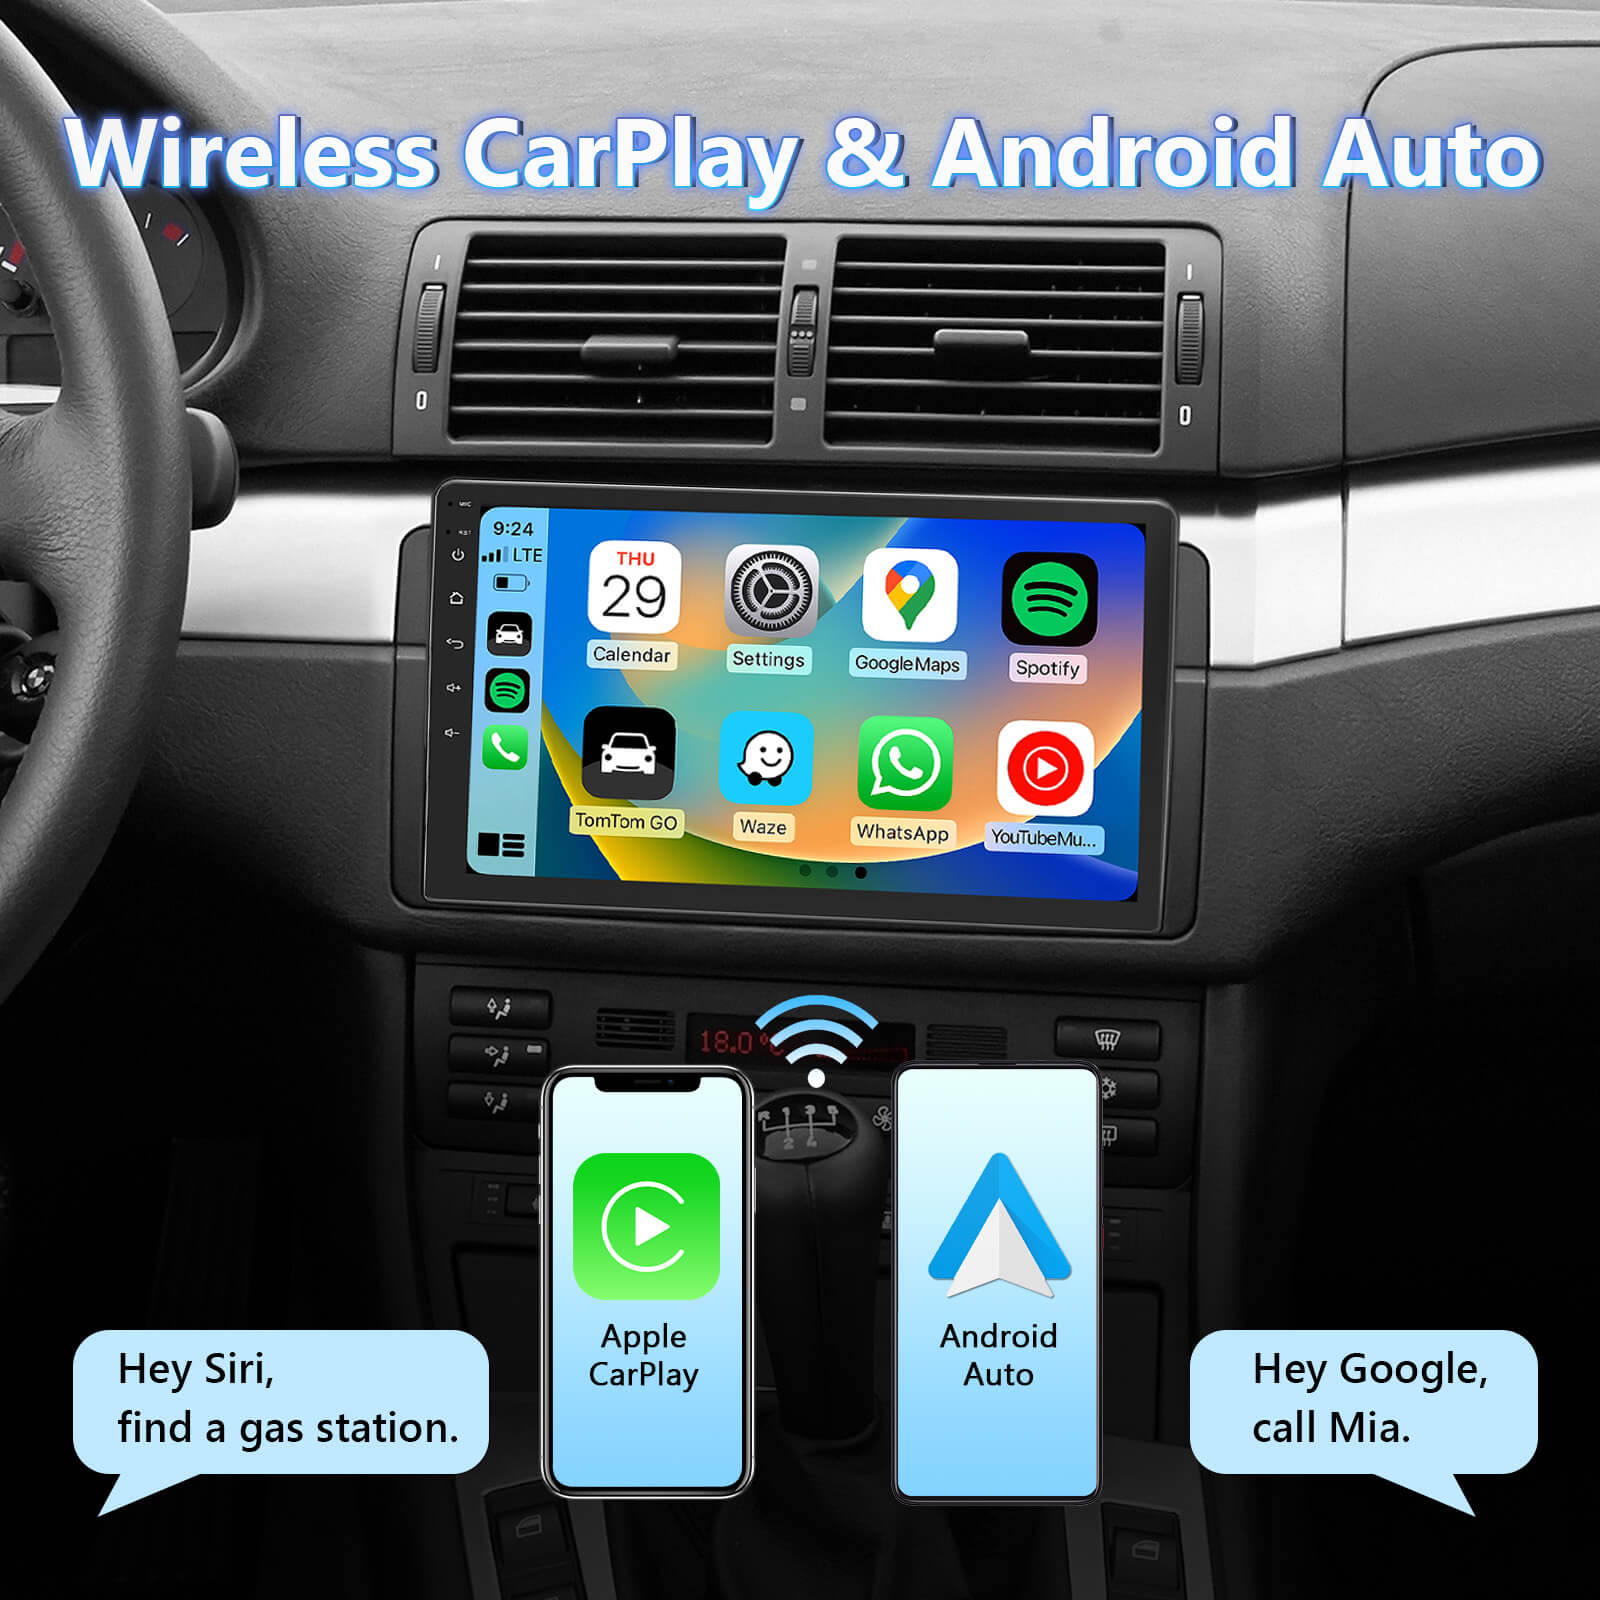 2-DIN DAB+ Android Autoradio und Navigationssystem mit 17,8 cm /7